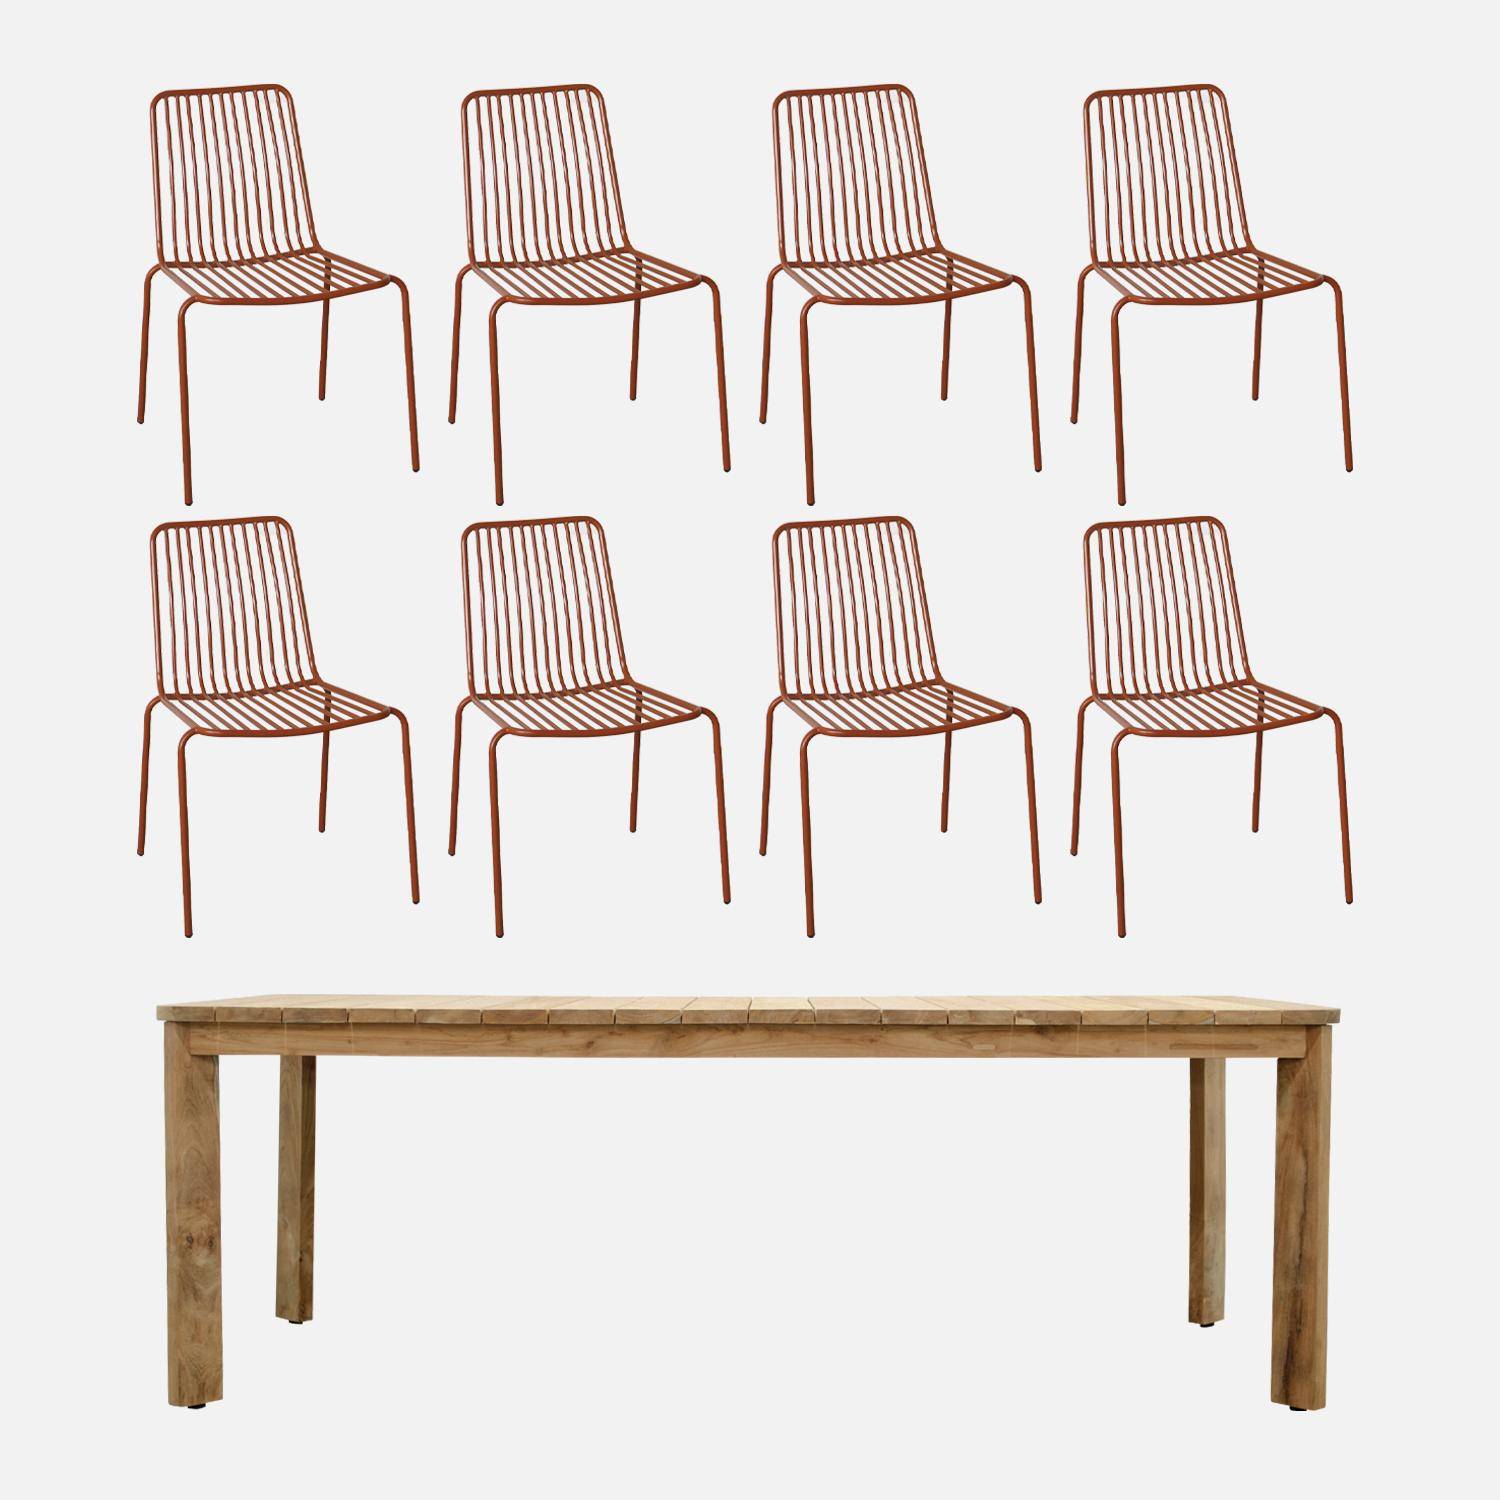 Table intérieur/extérieur en teck recyclé 220cm + 8 chaises en métal terracotta  Photo1